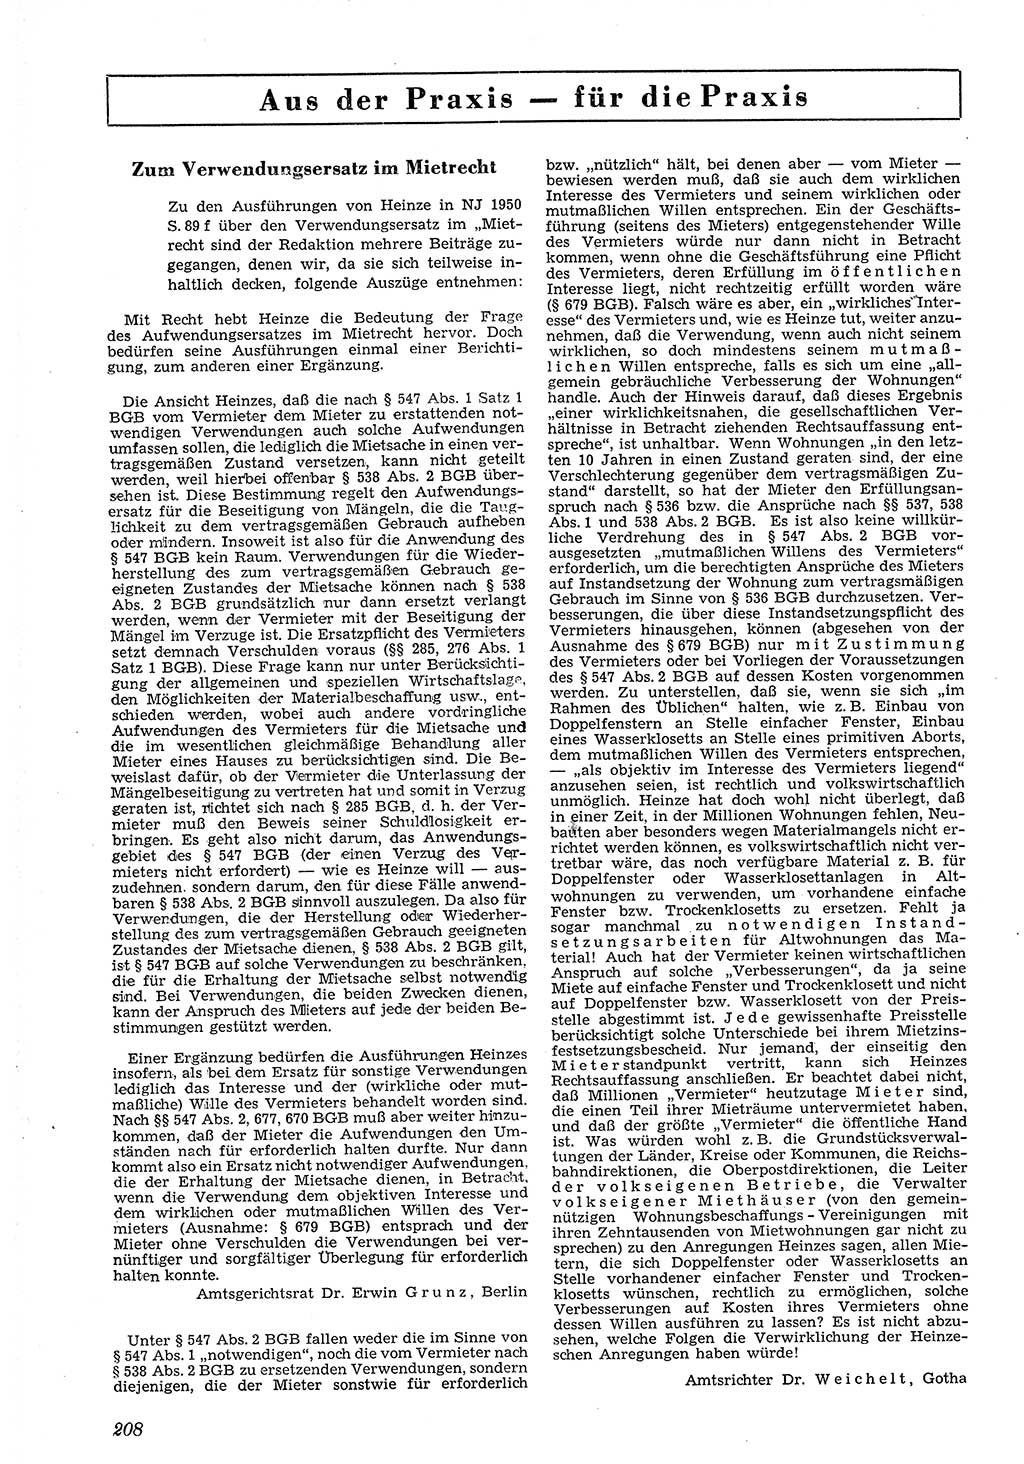 Neue Justiz (NJ), Zeitschrift für Recht und Rechtswissenschaft [Deutsche Demokratische Republik (DDR)], 4. Jahrgang 1950, Seite 208 (NJ DDR 1950, S. 208)